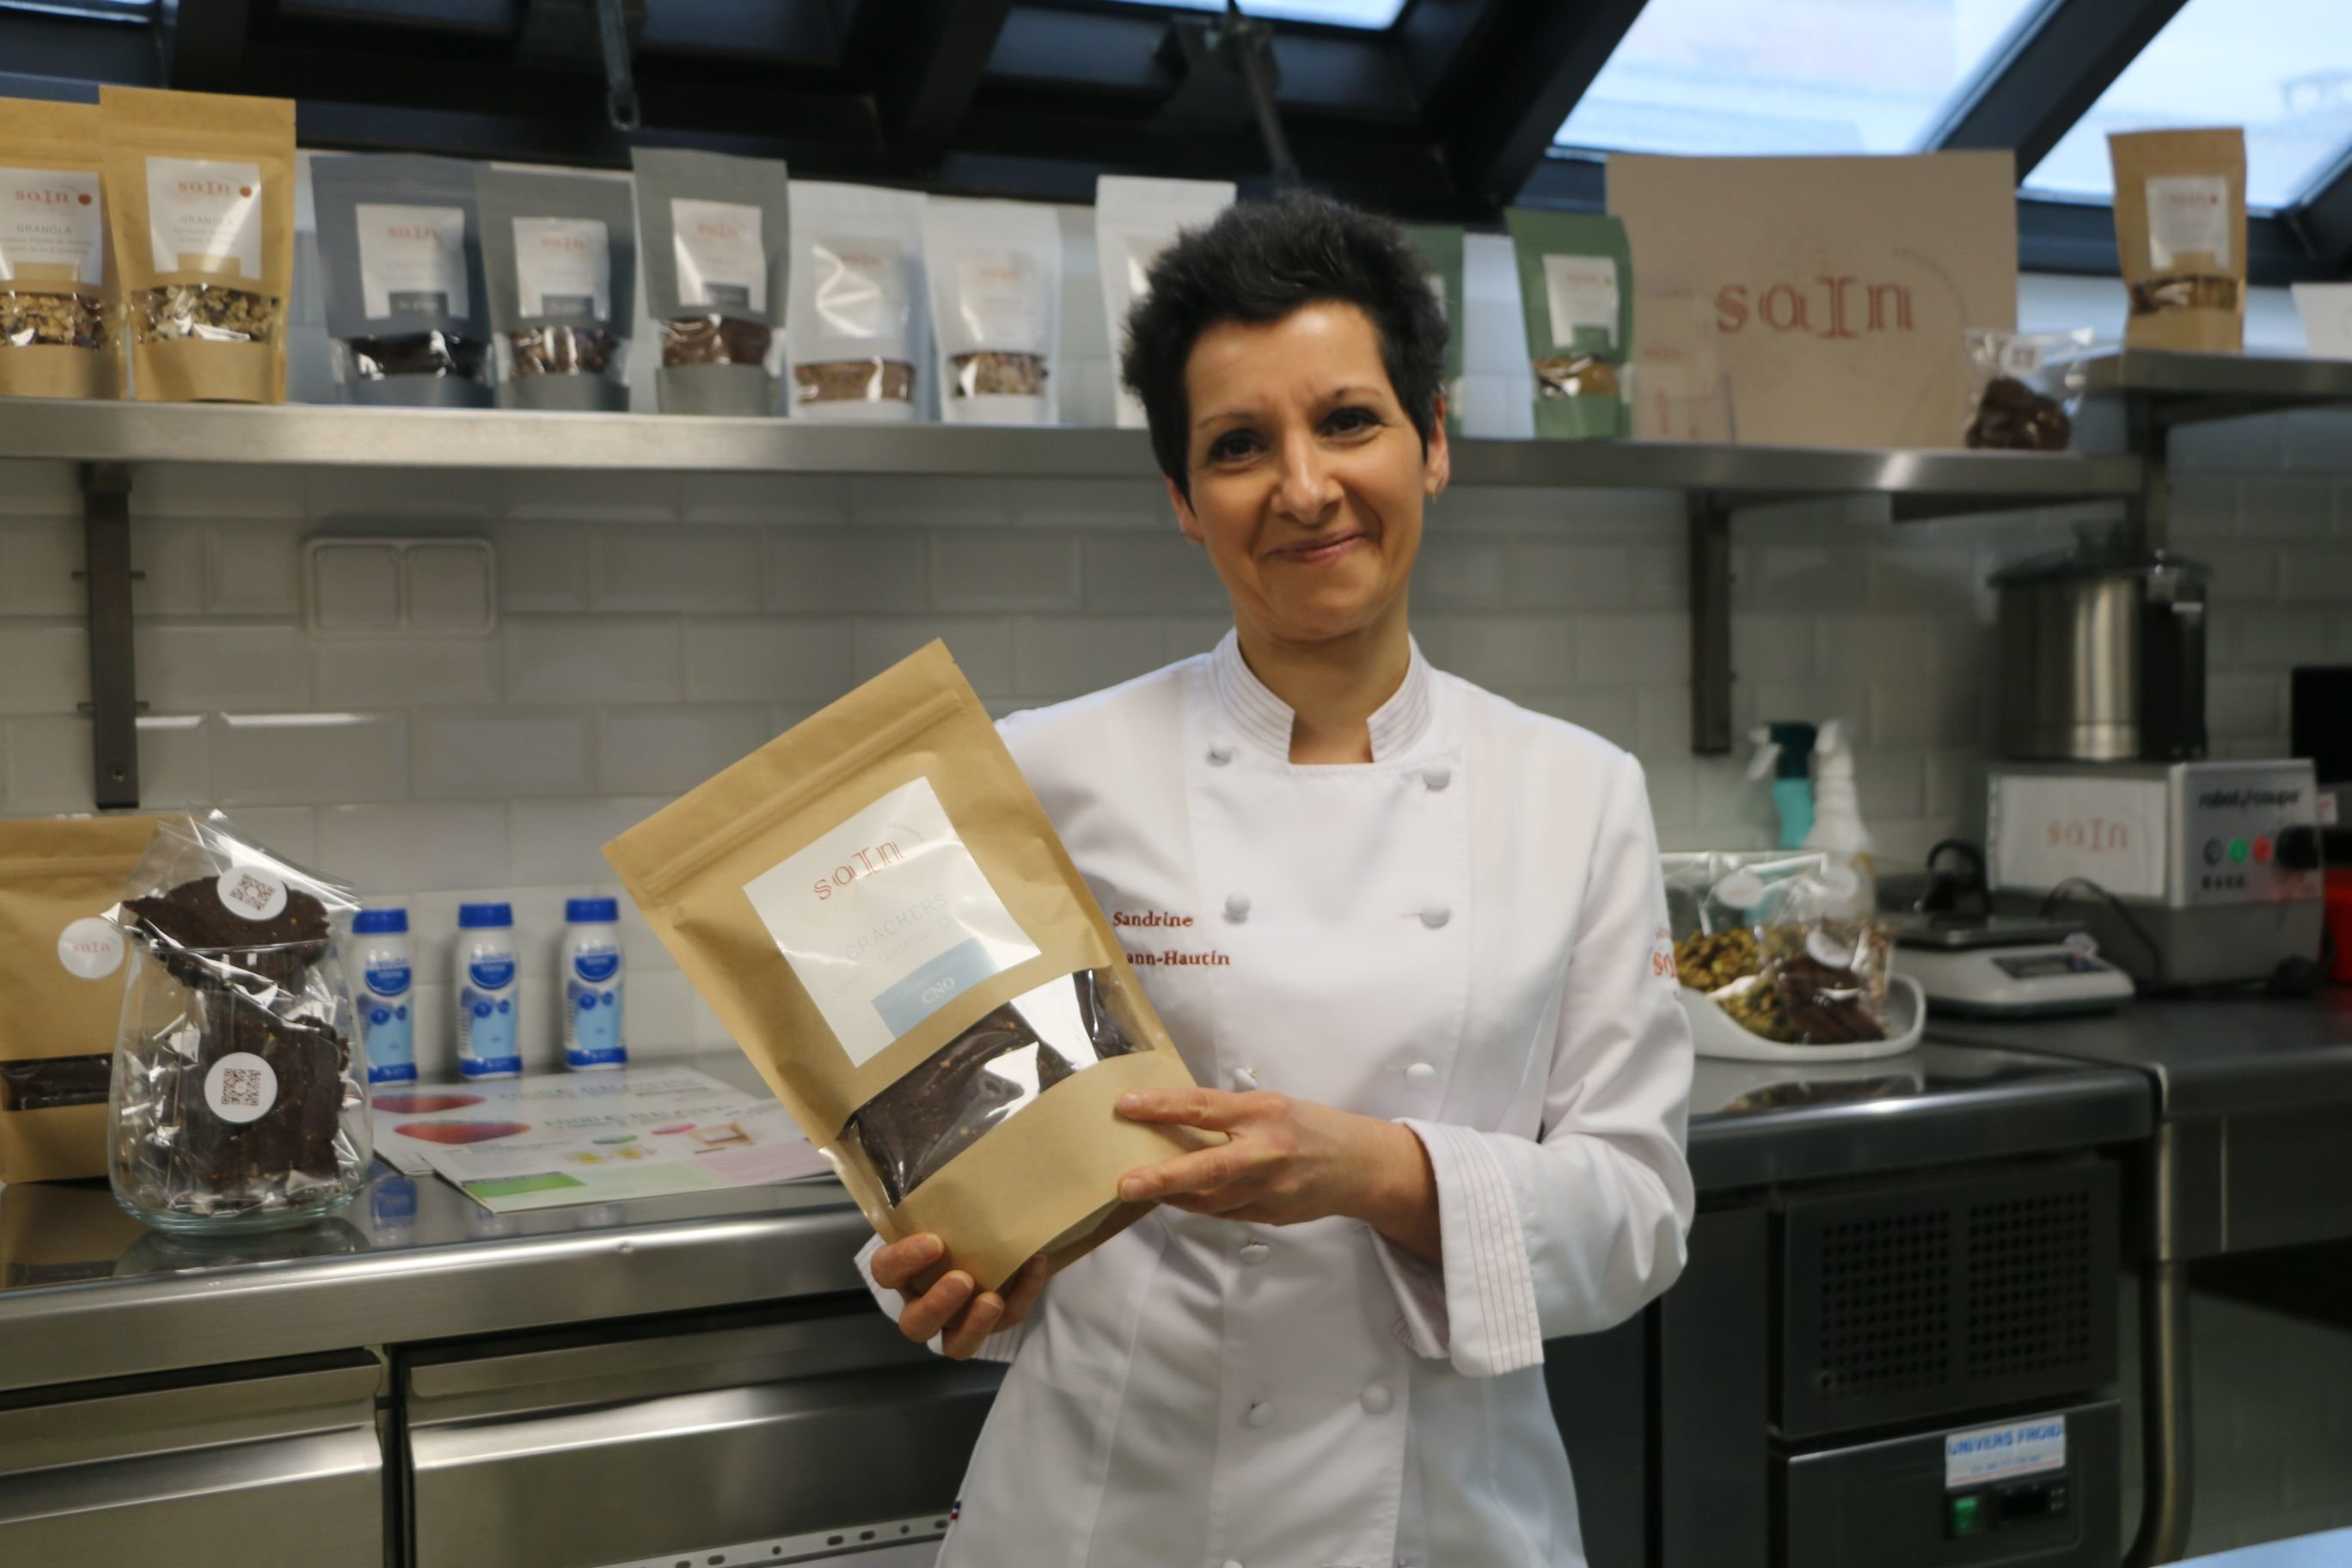 La cheffe-pâtissière, Sandrine Baumann-Hautin, vient de publier un livre de recettes, pour les personnes atteintes de maladies chroniques ou dénutries. LP/Juliette Duclos